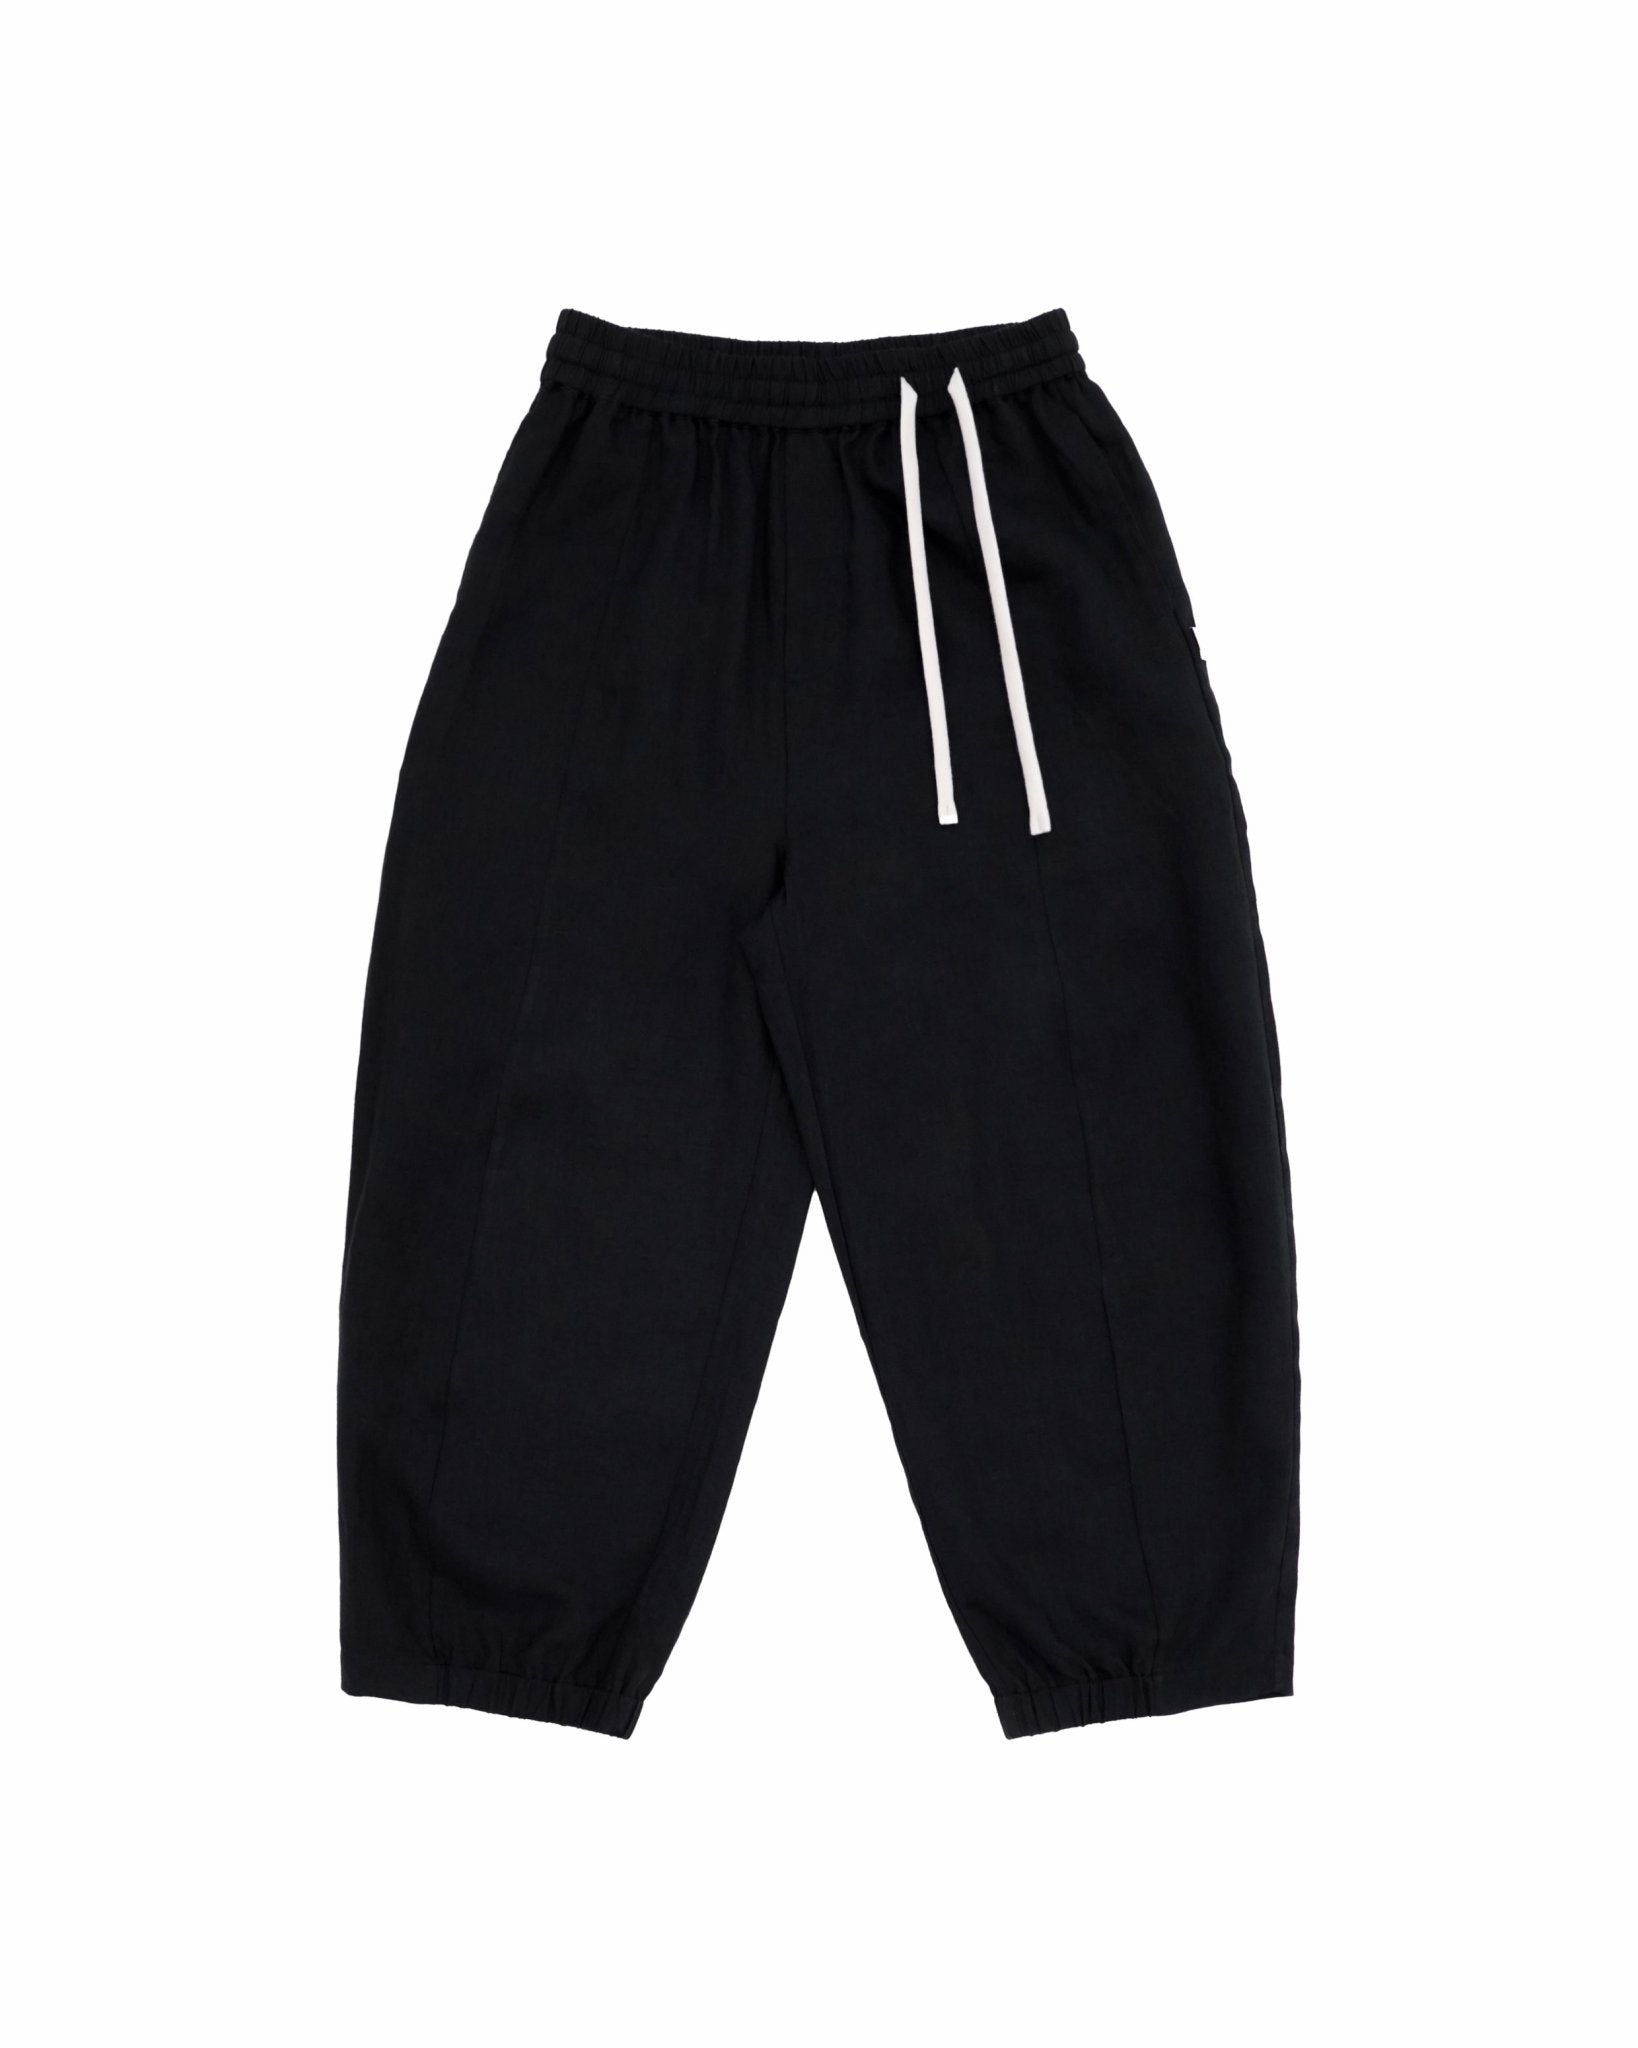 Journeyman Linen Pants - Black - G R A Y E